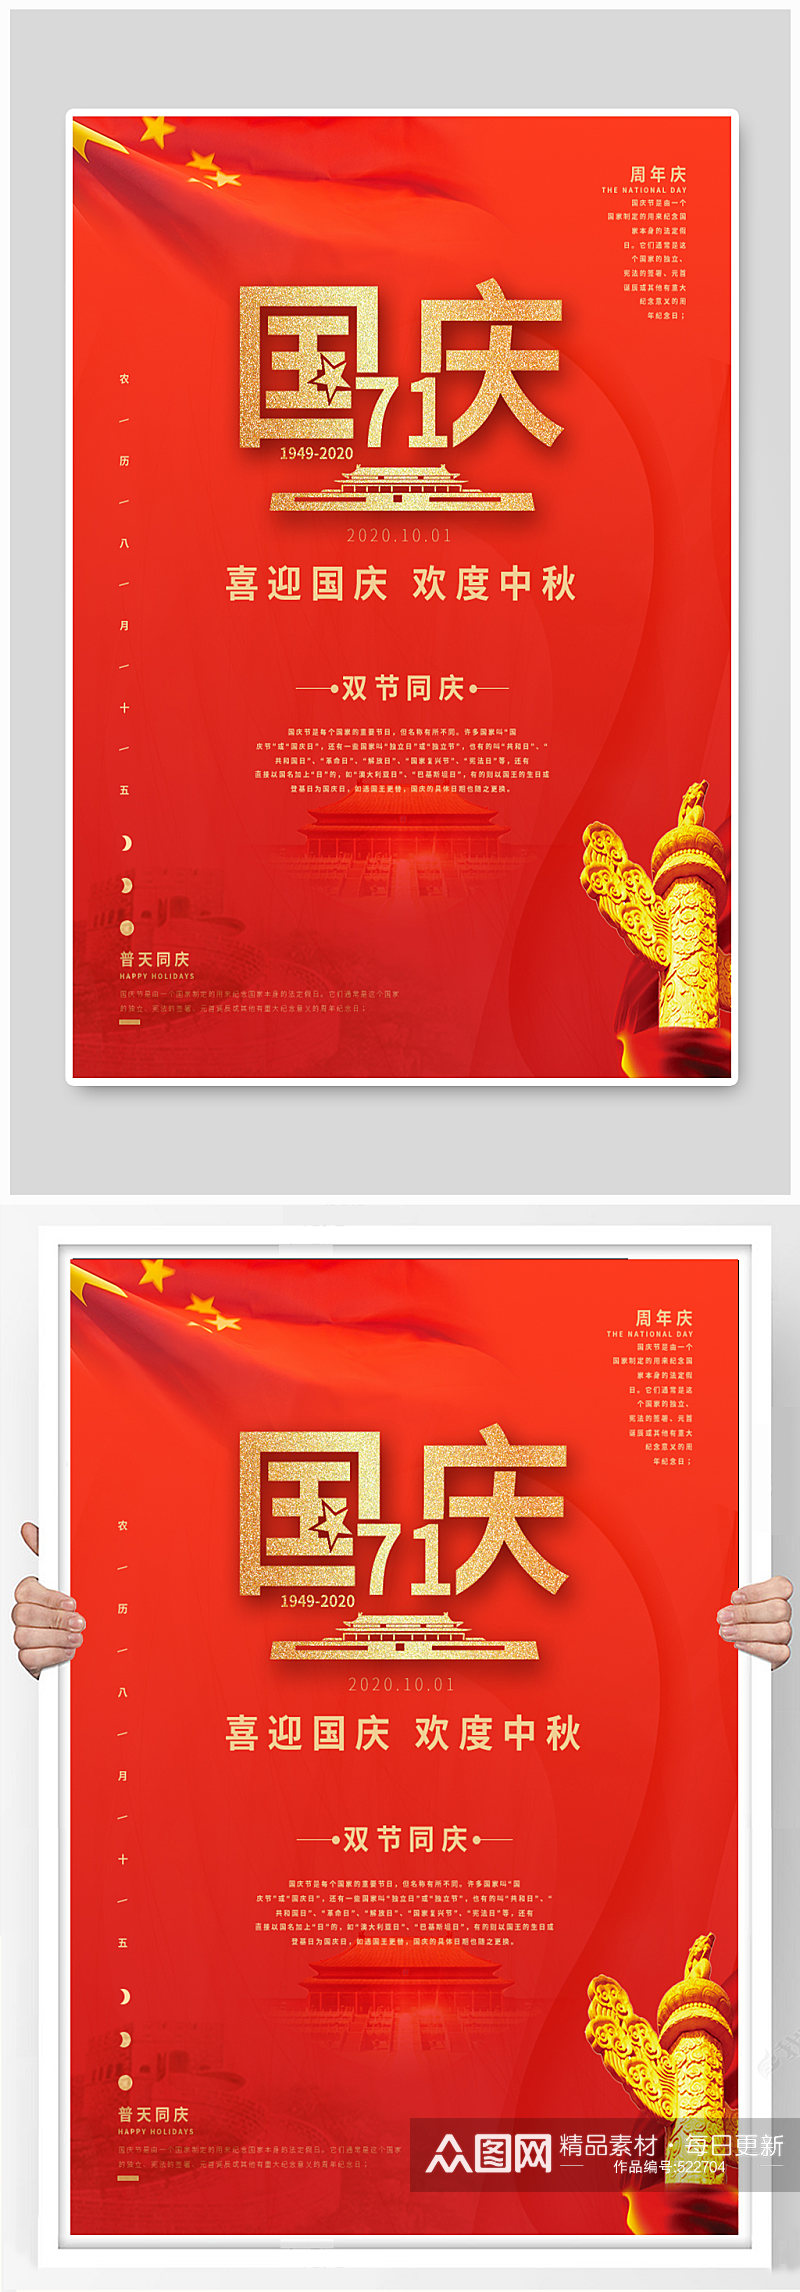 中国节日国庆海报素材